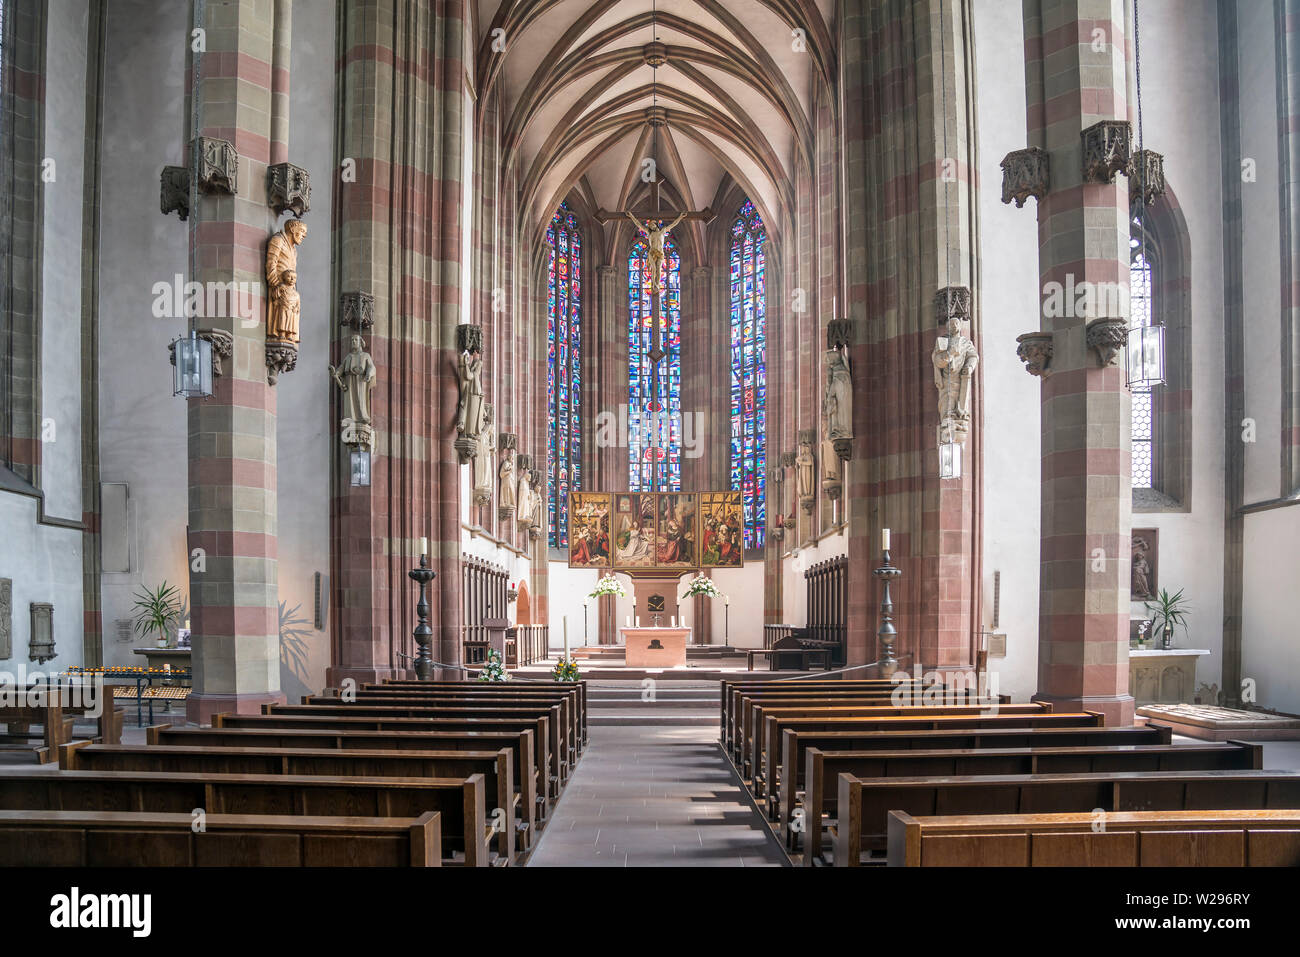 Innenraum der Marienkapelle Würzburg, Unterfranken, Bayern, Deutschland  |  Marienkapelle church interior,  Würzburg,  Lower Franconia, Bavaria, Germa Stock Photo